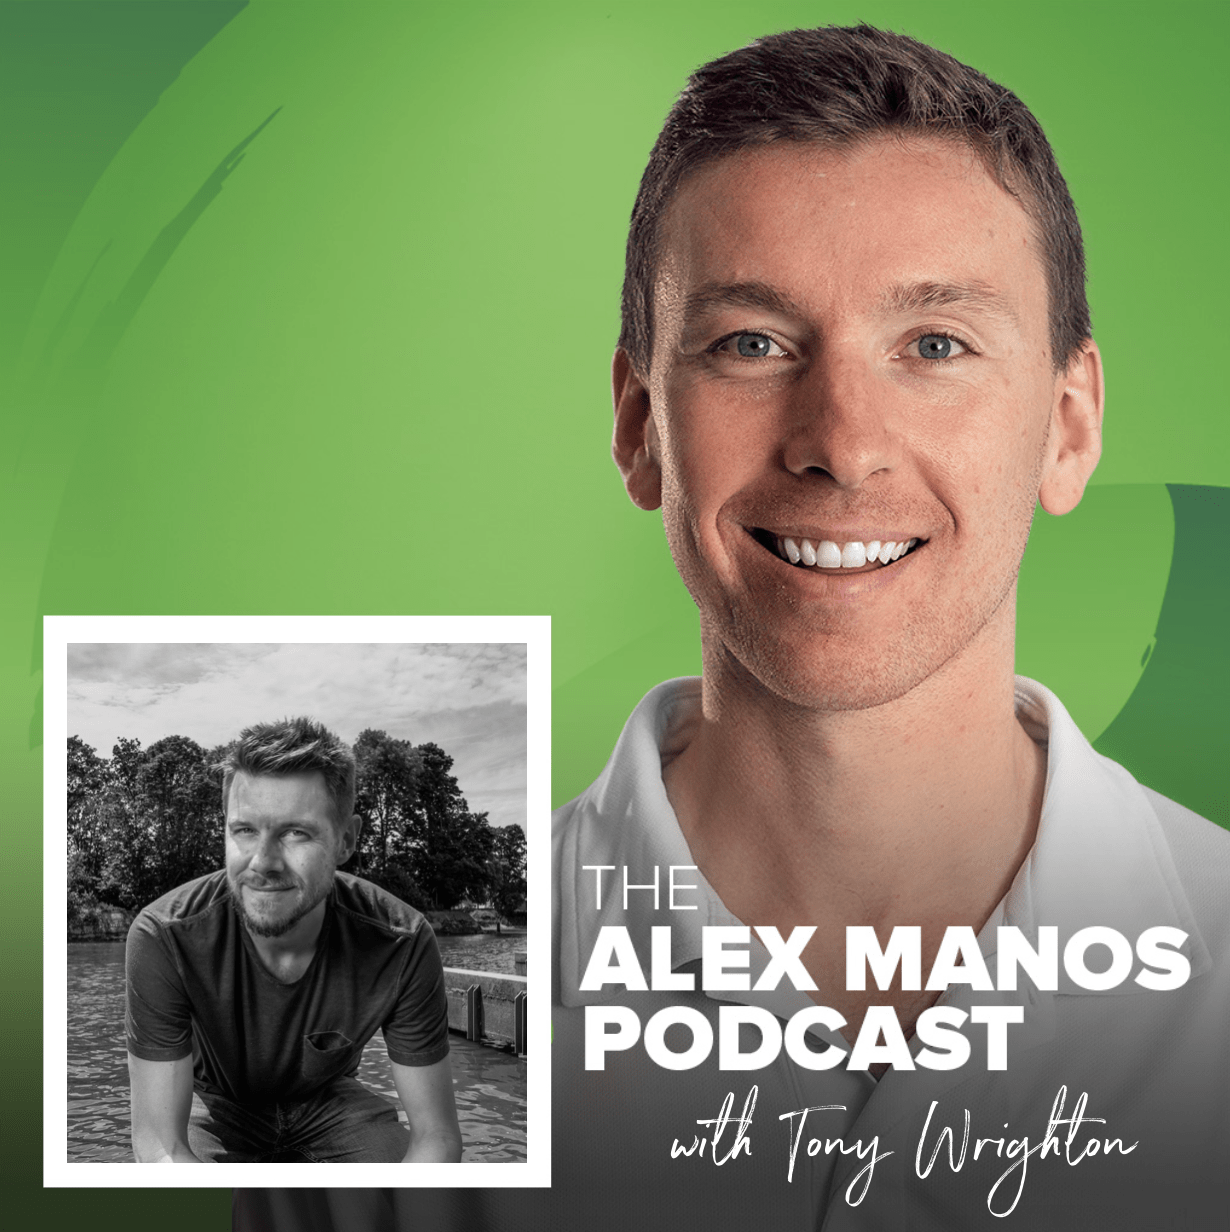 Alex Manos Podcast with Tony Wrighton